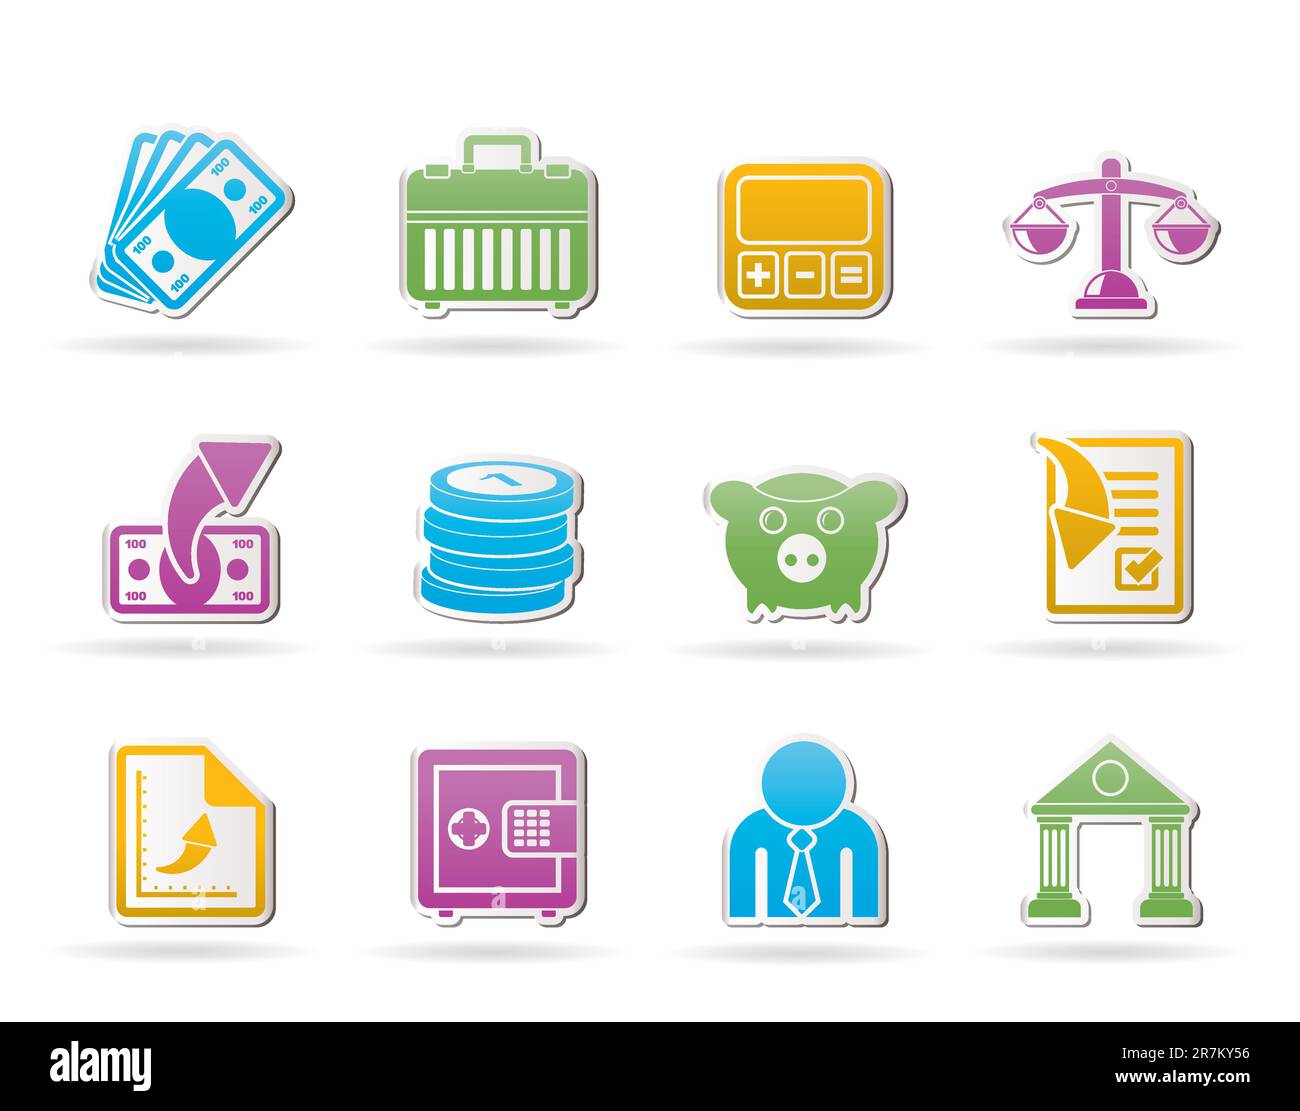 Banco, negocios y finanzas iconos vector - conjunto de iconos Ilustración del Vector